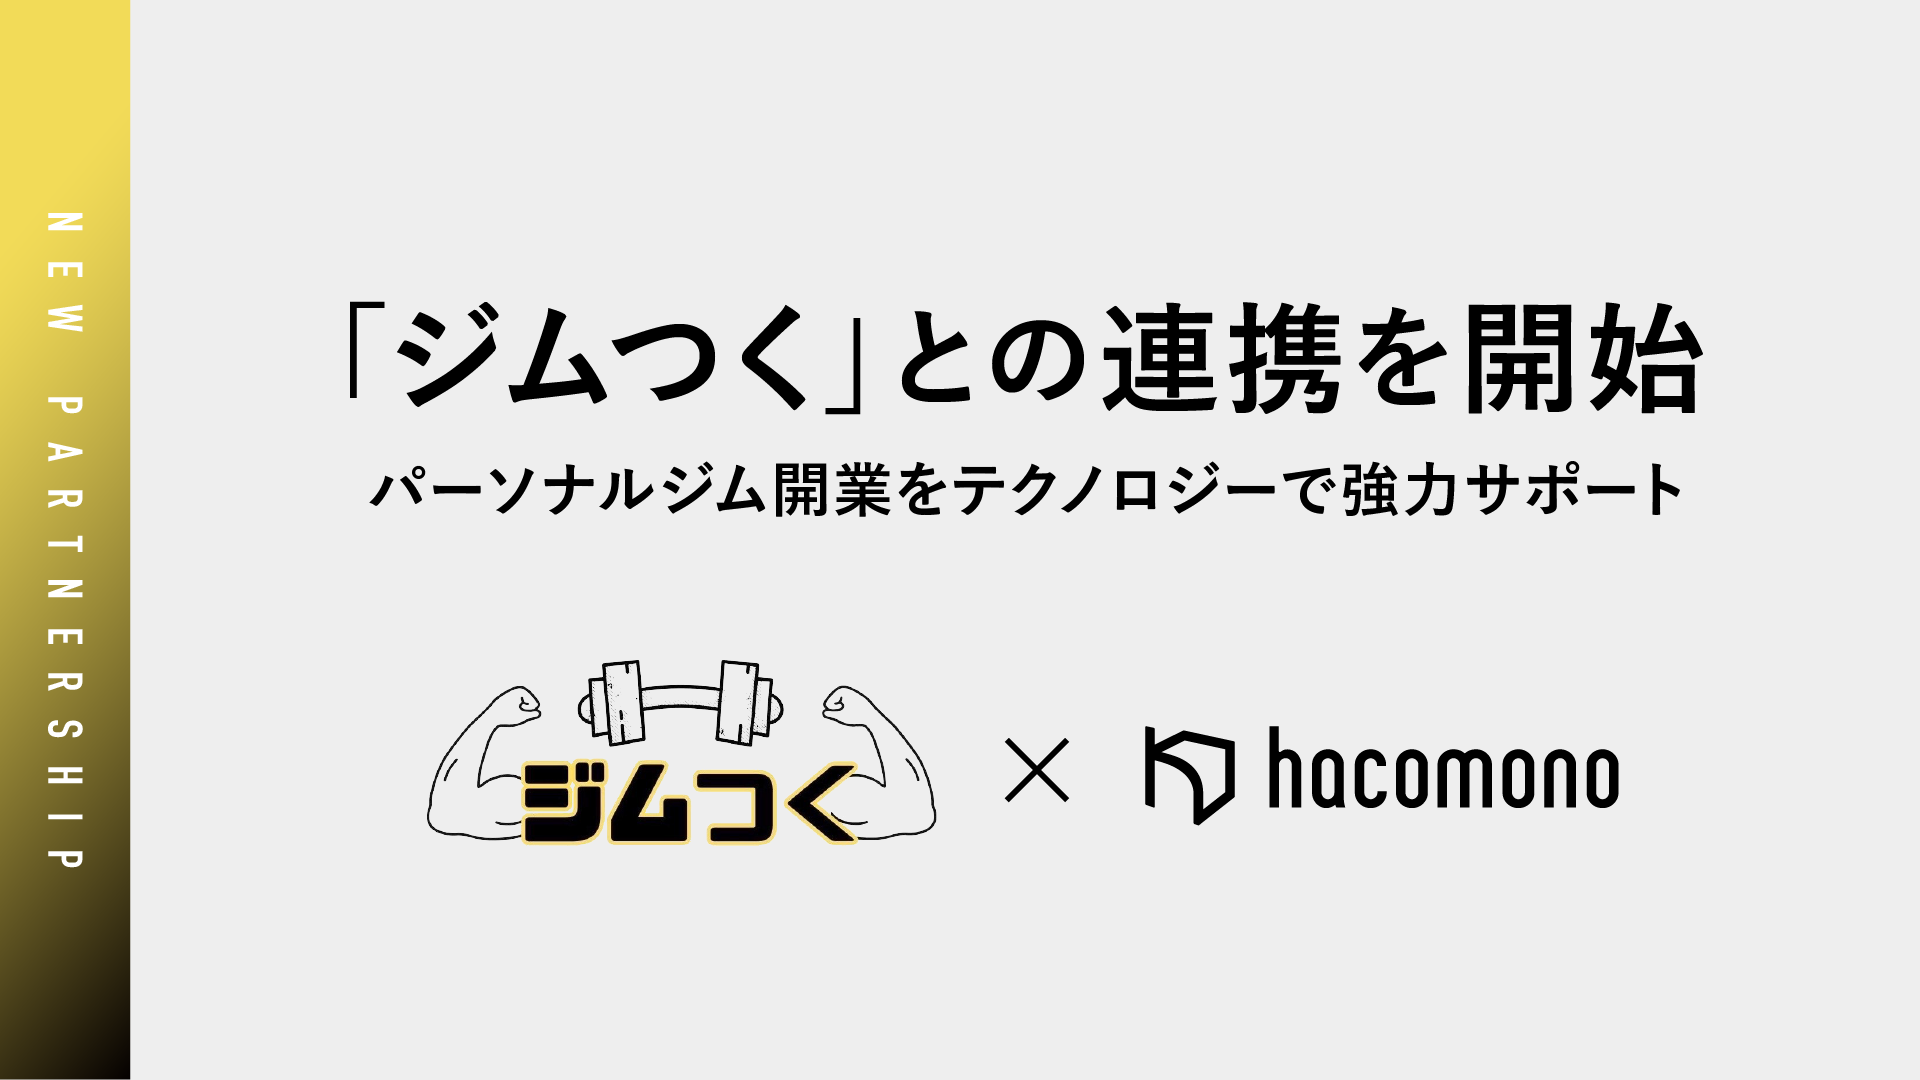 hacomono、「ジムつく」との連携を開始。パーソナルジム開業をテクノロジーで強力サポート